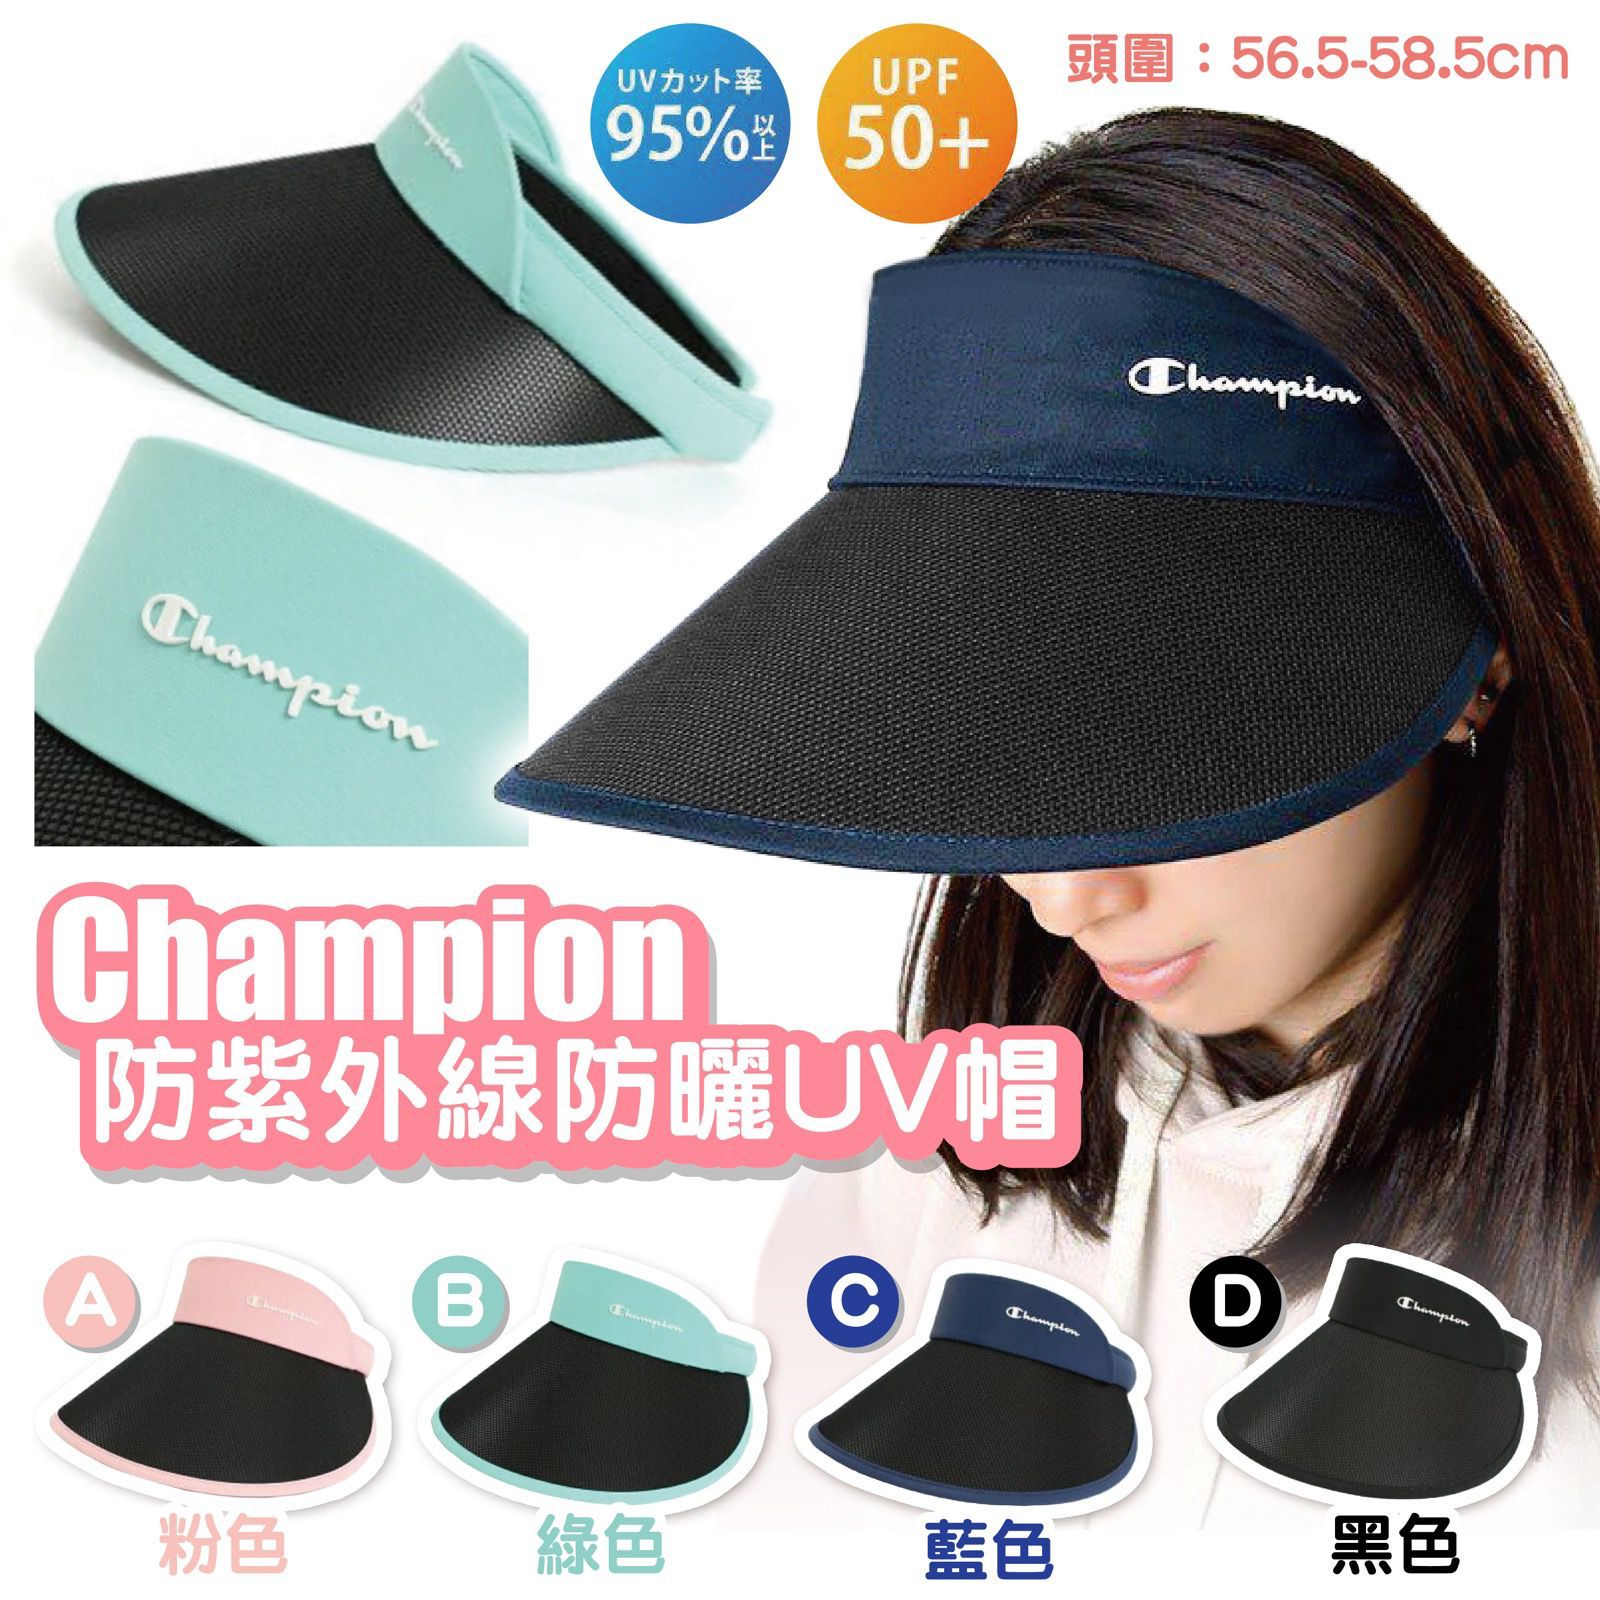 Champion防紫外線防曬UV帽